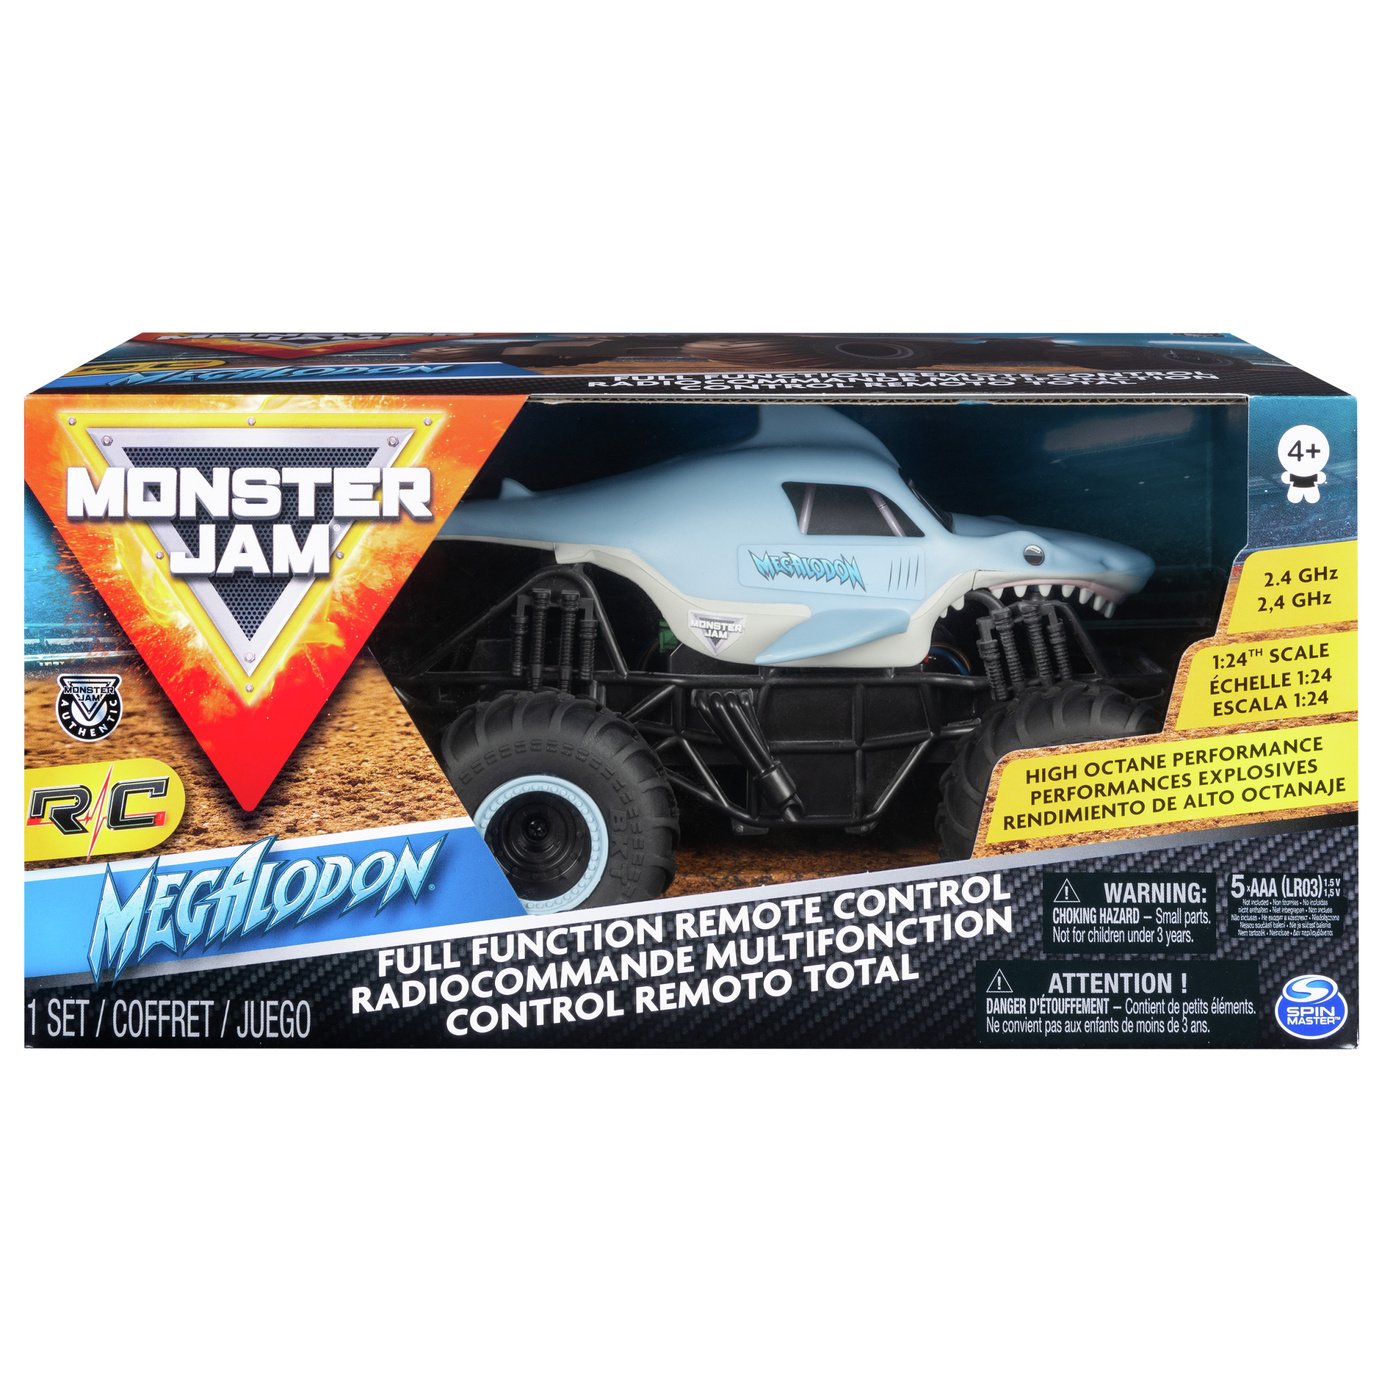 Monster Jam RC 1:24 Megalodon Truck Review